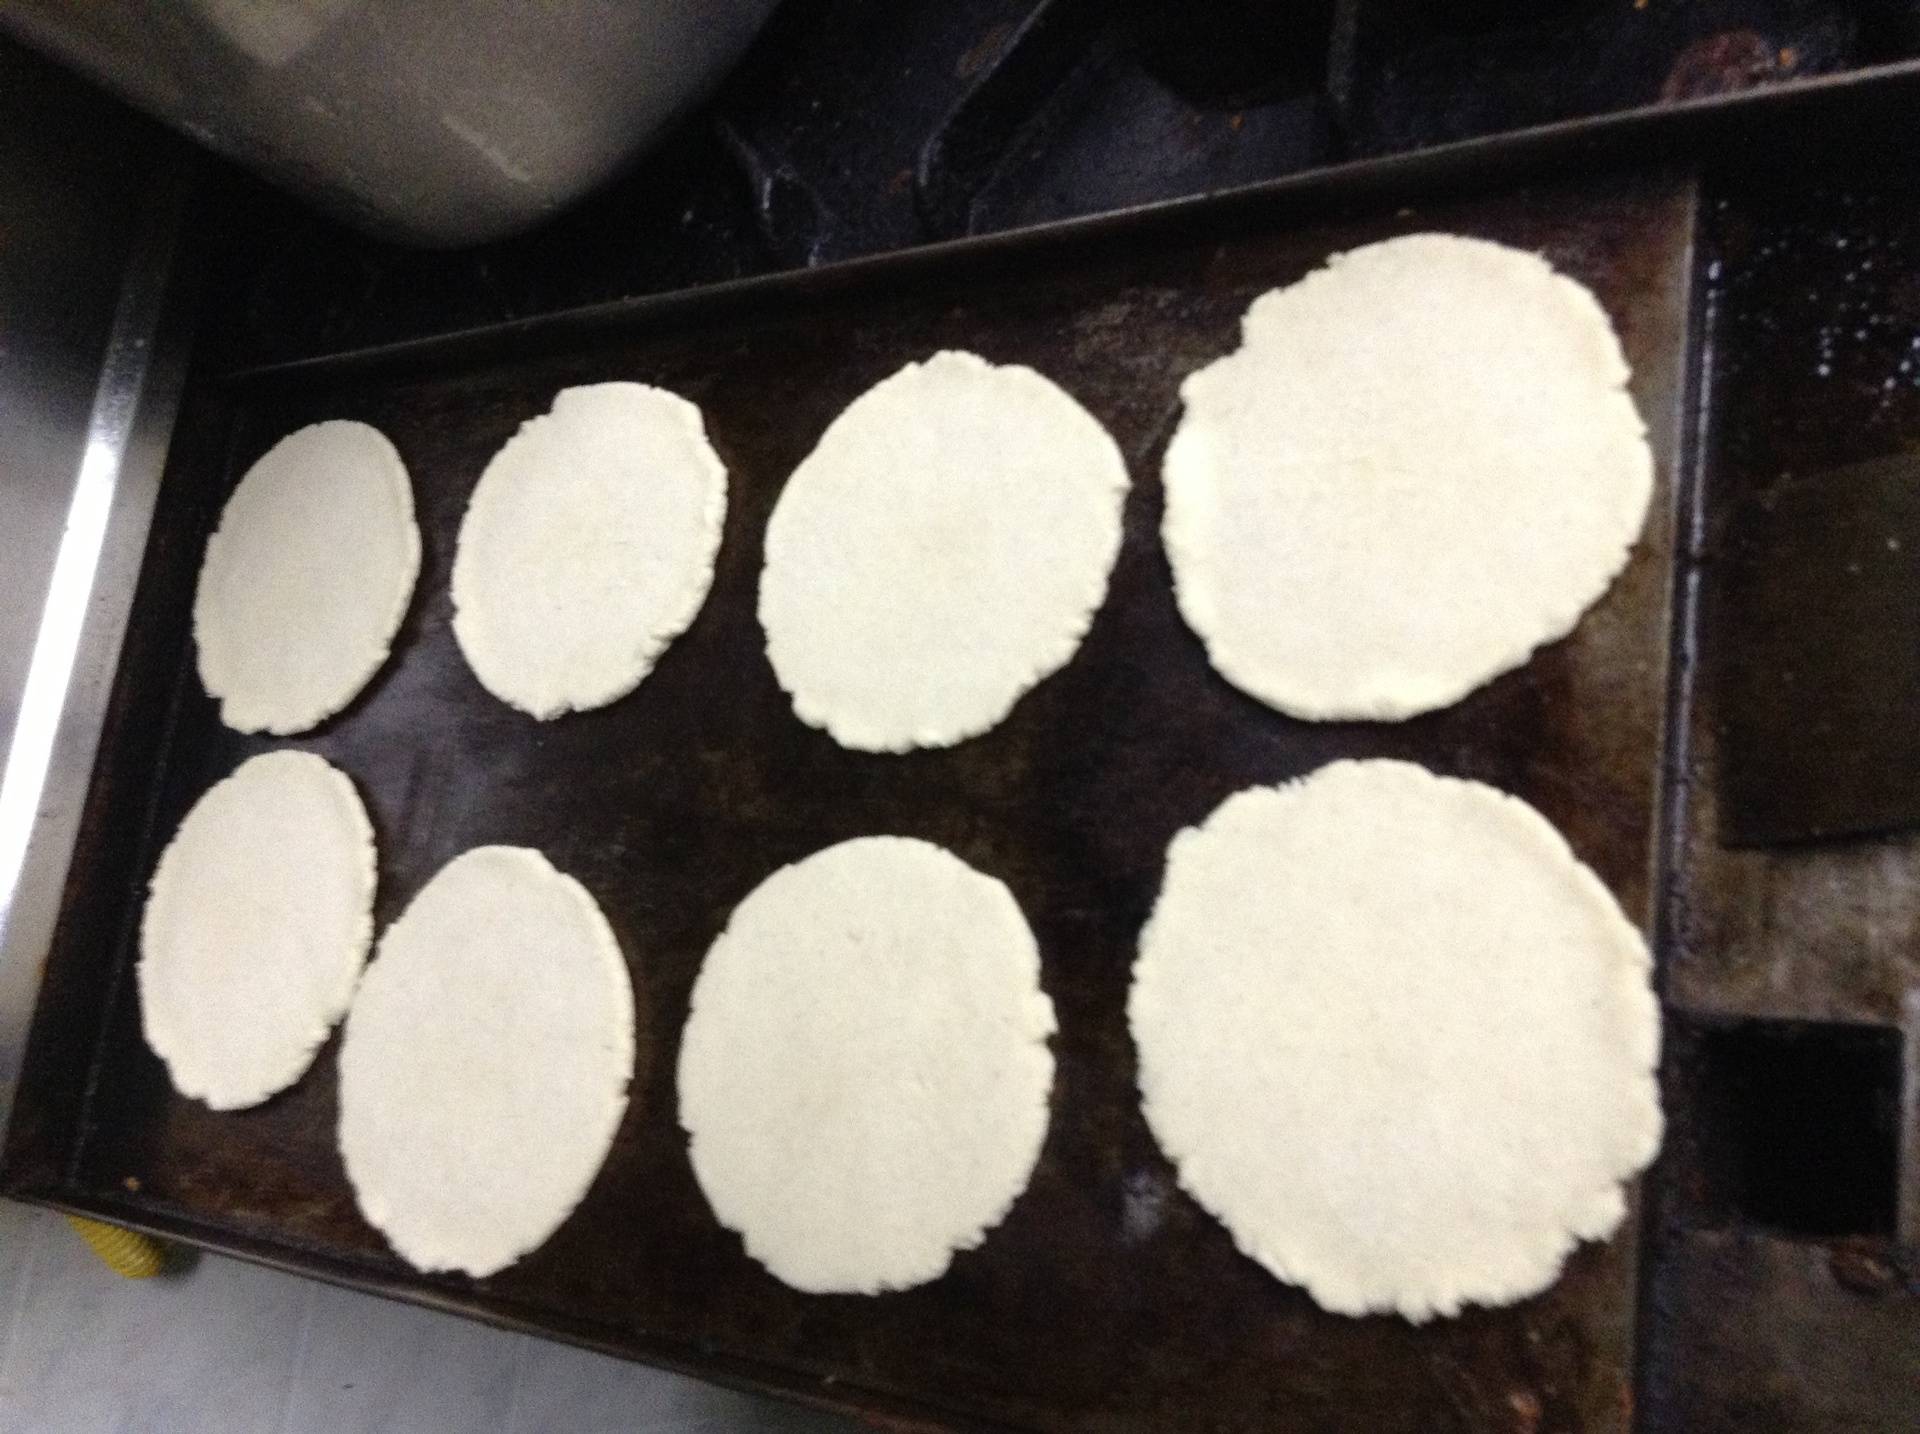 Toasting tortillas